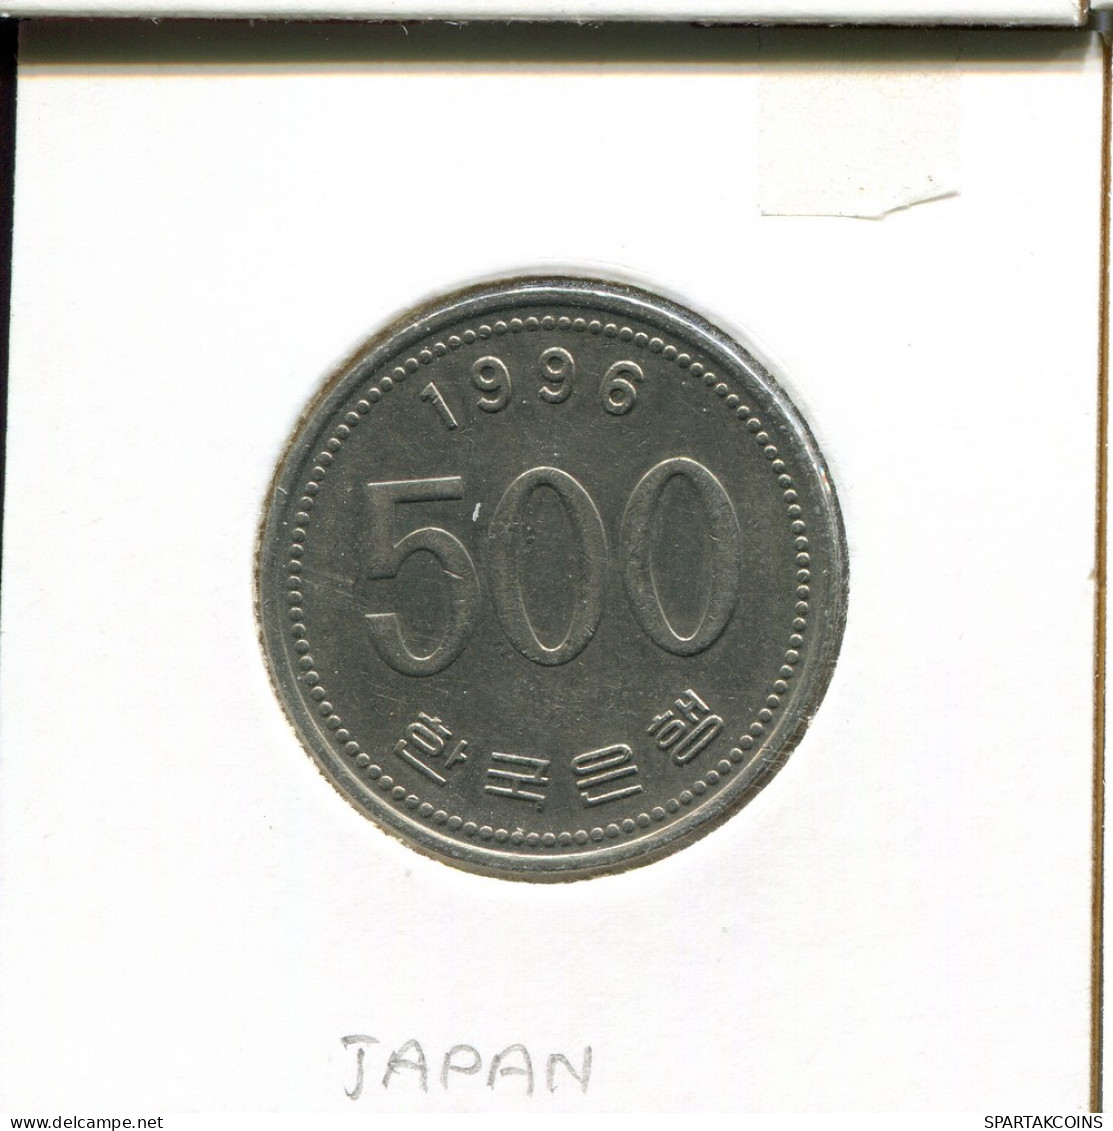 500 WON 1996 DKOREA SOUTH KOREA Münze #AS057.D - Coreal Del Sur